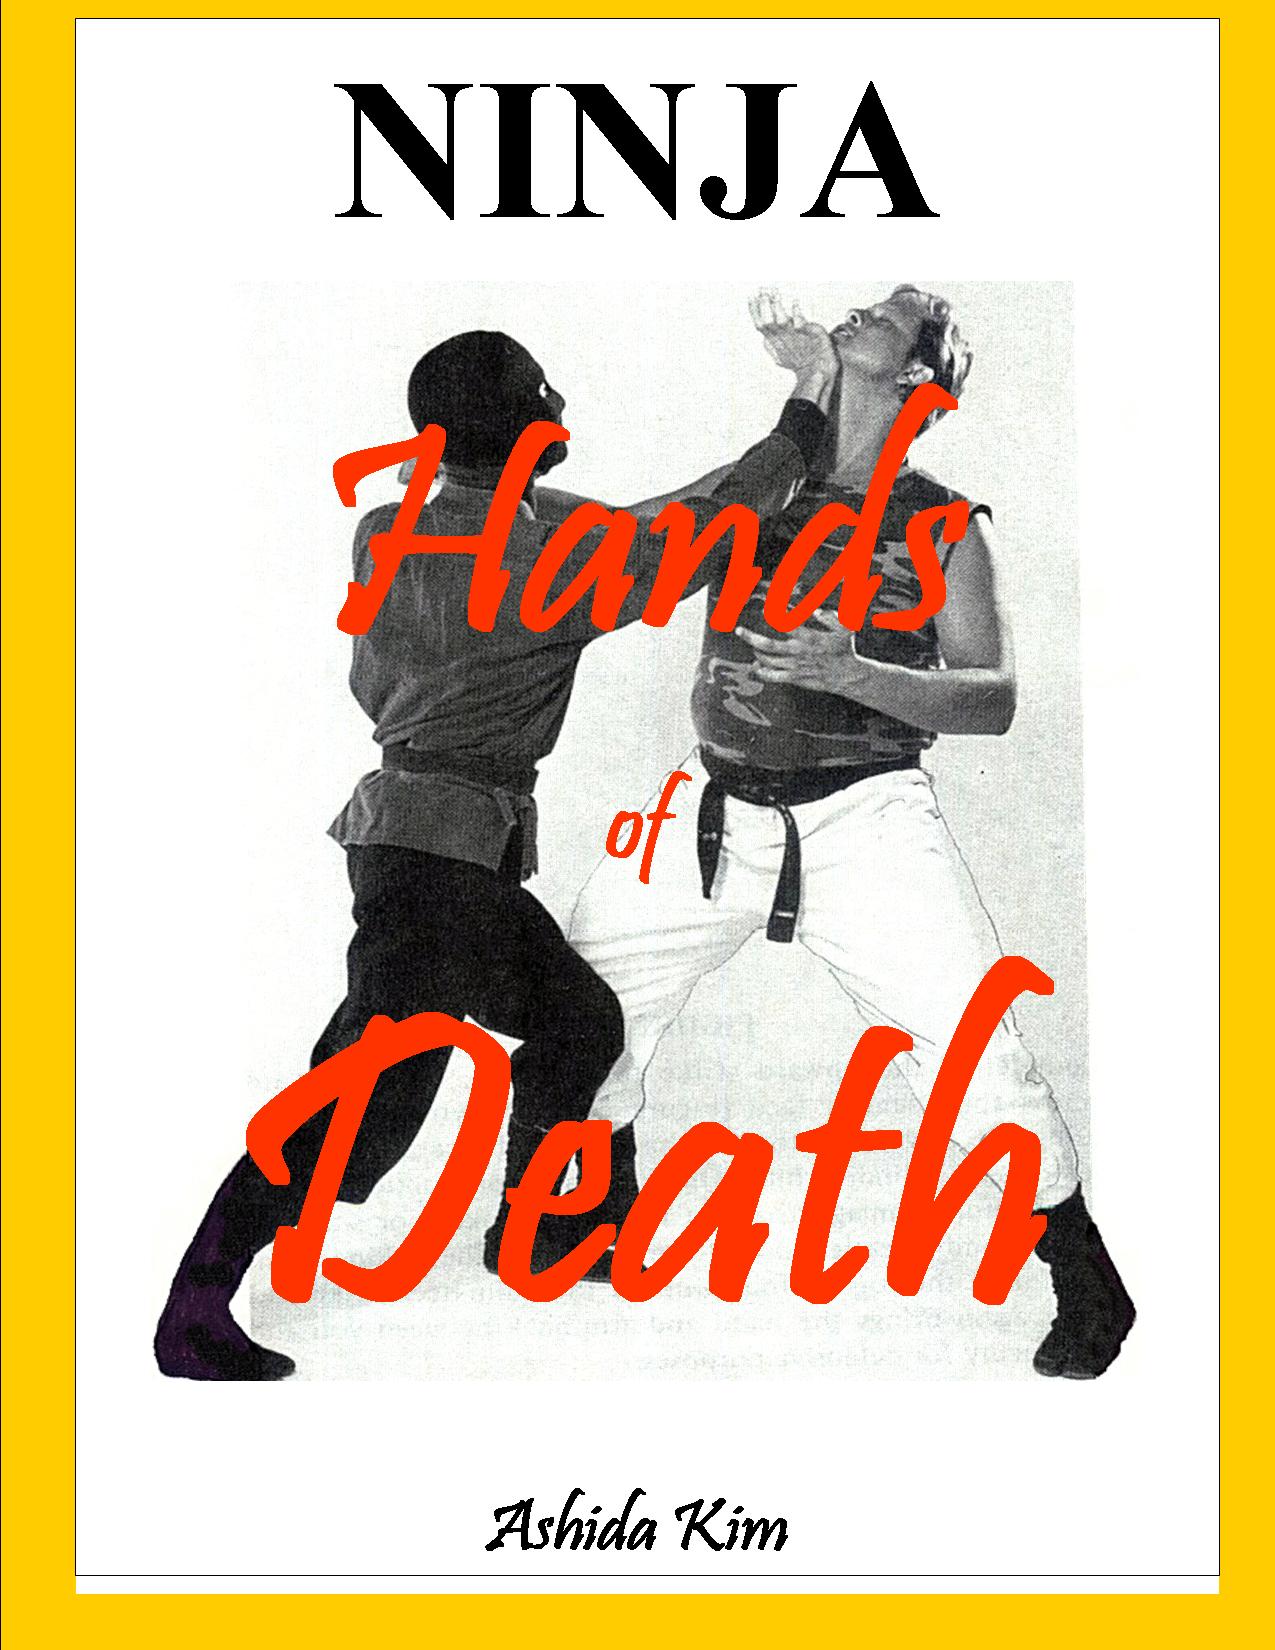 NINJA-Hands of Death 